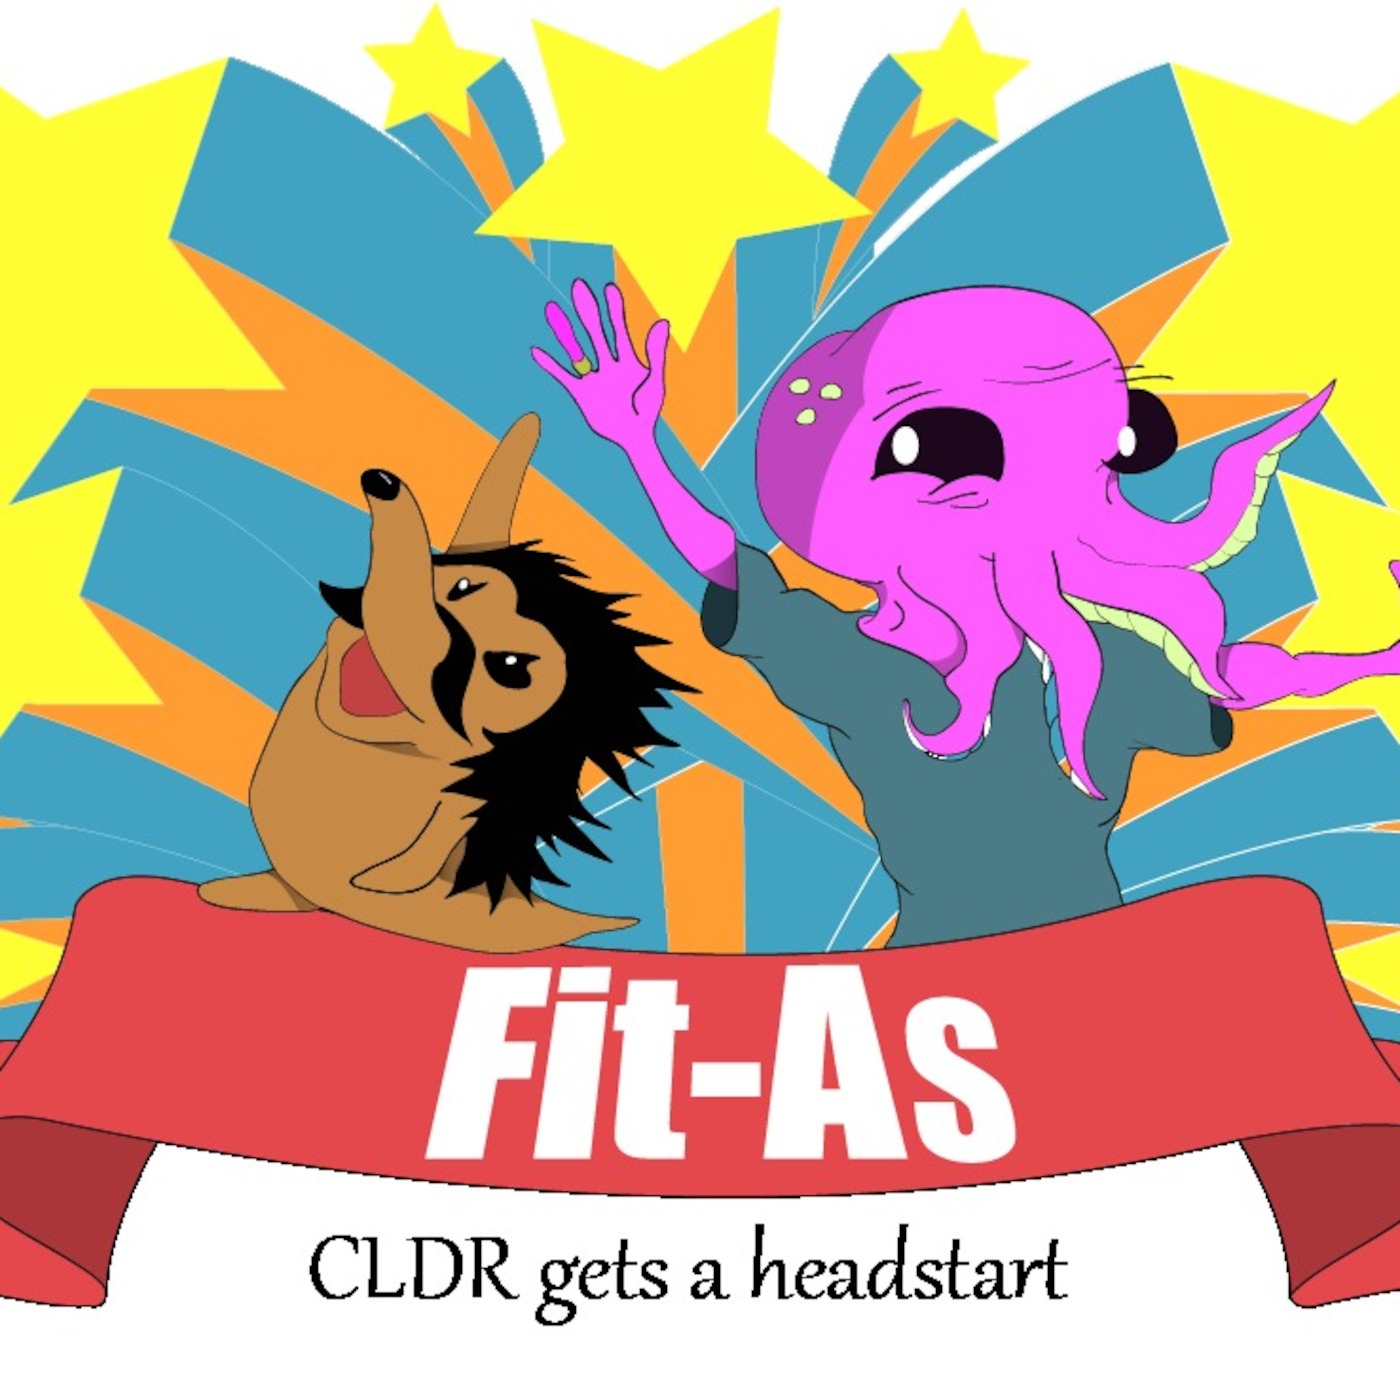 Episode 9 - CDLR gets a headstart